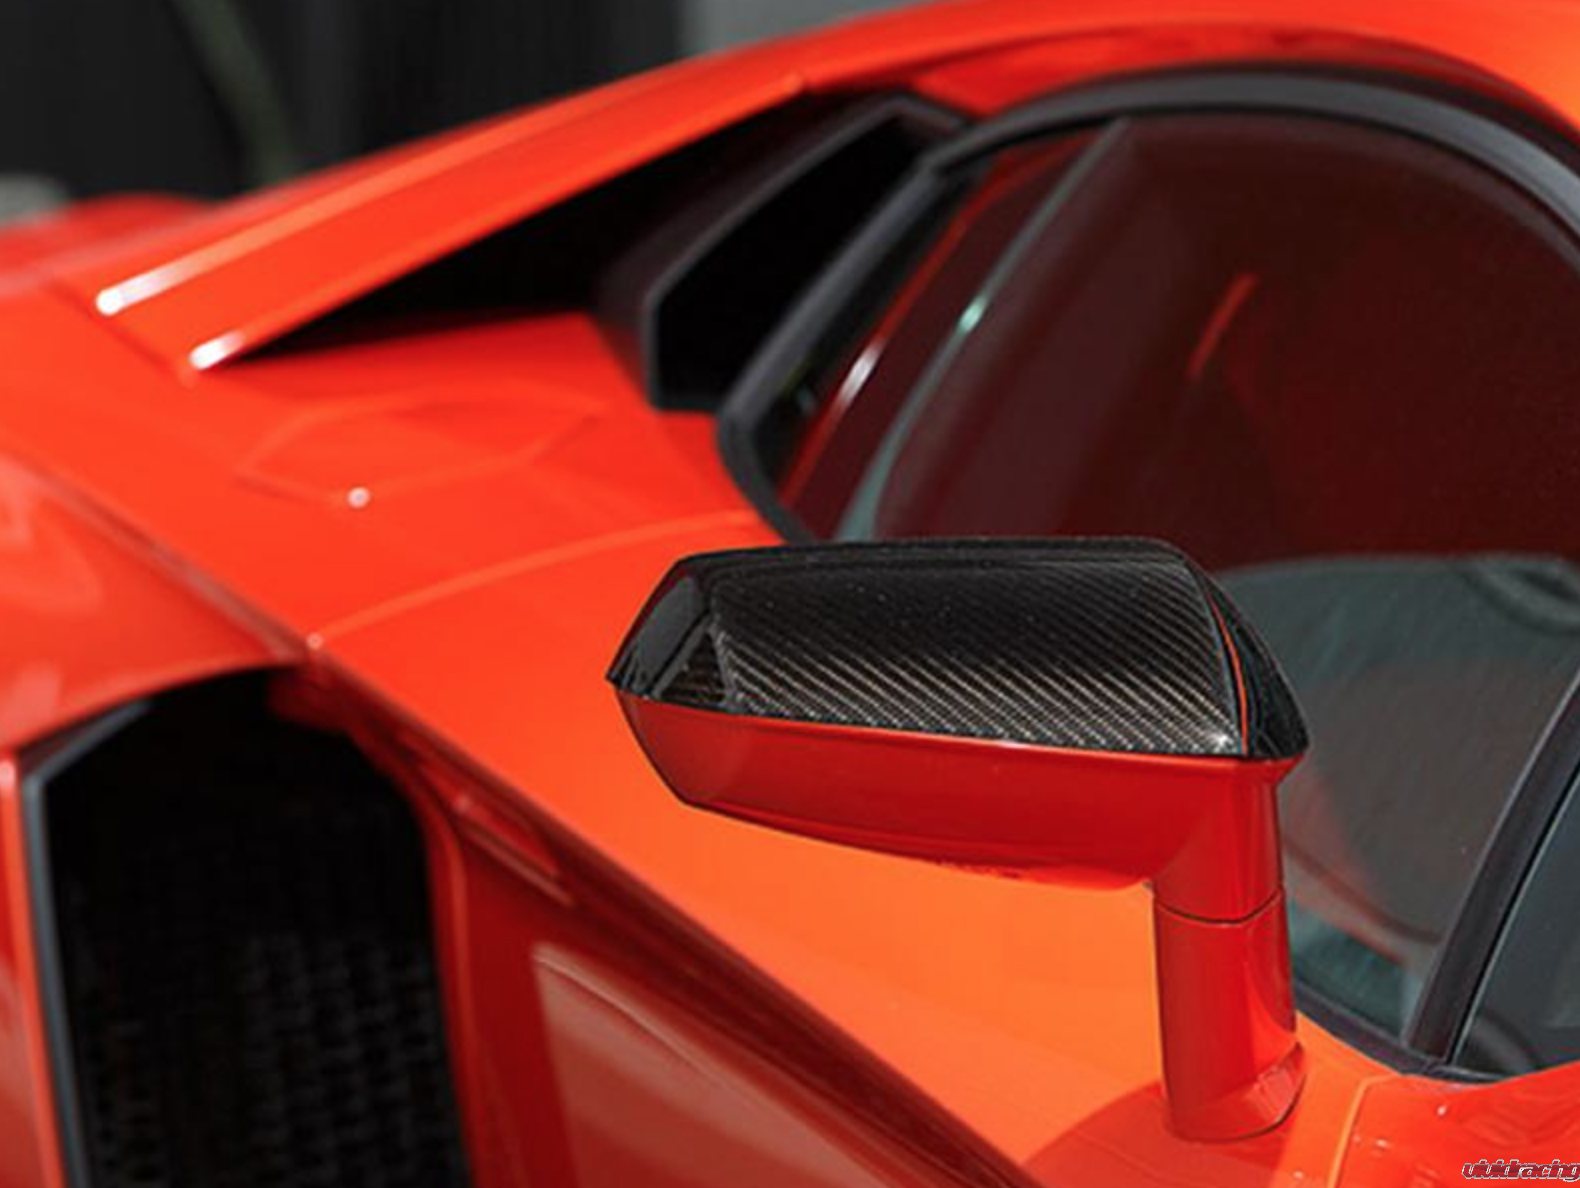 Lamborghini Aventador, Leap Design, carbon fiber aerodynamic parts, Ferrari 458 Italia